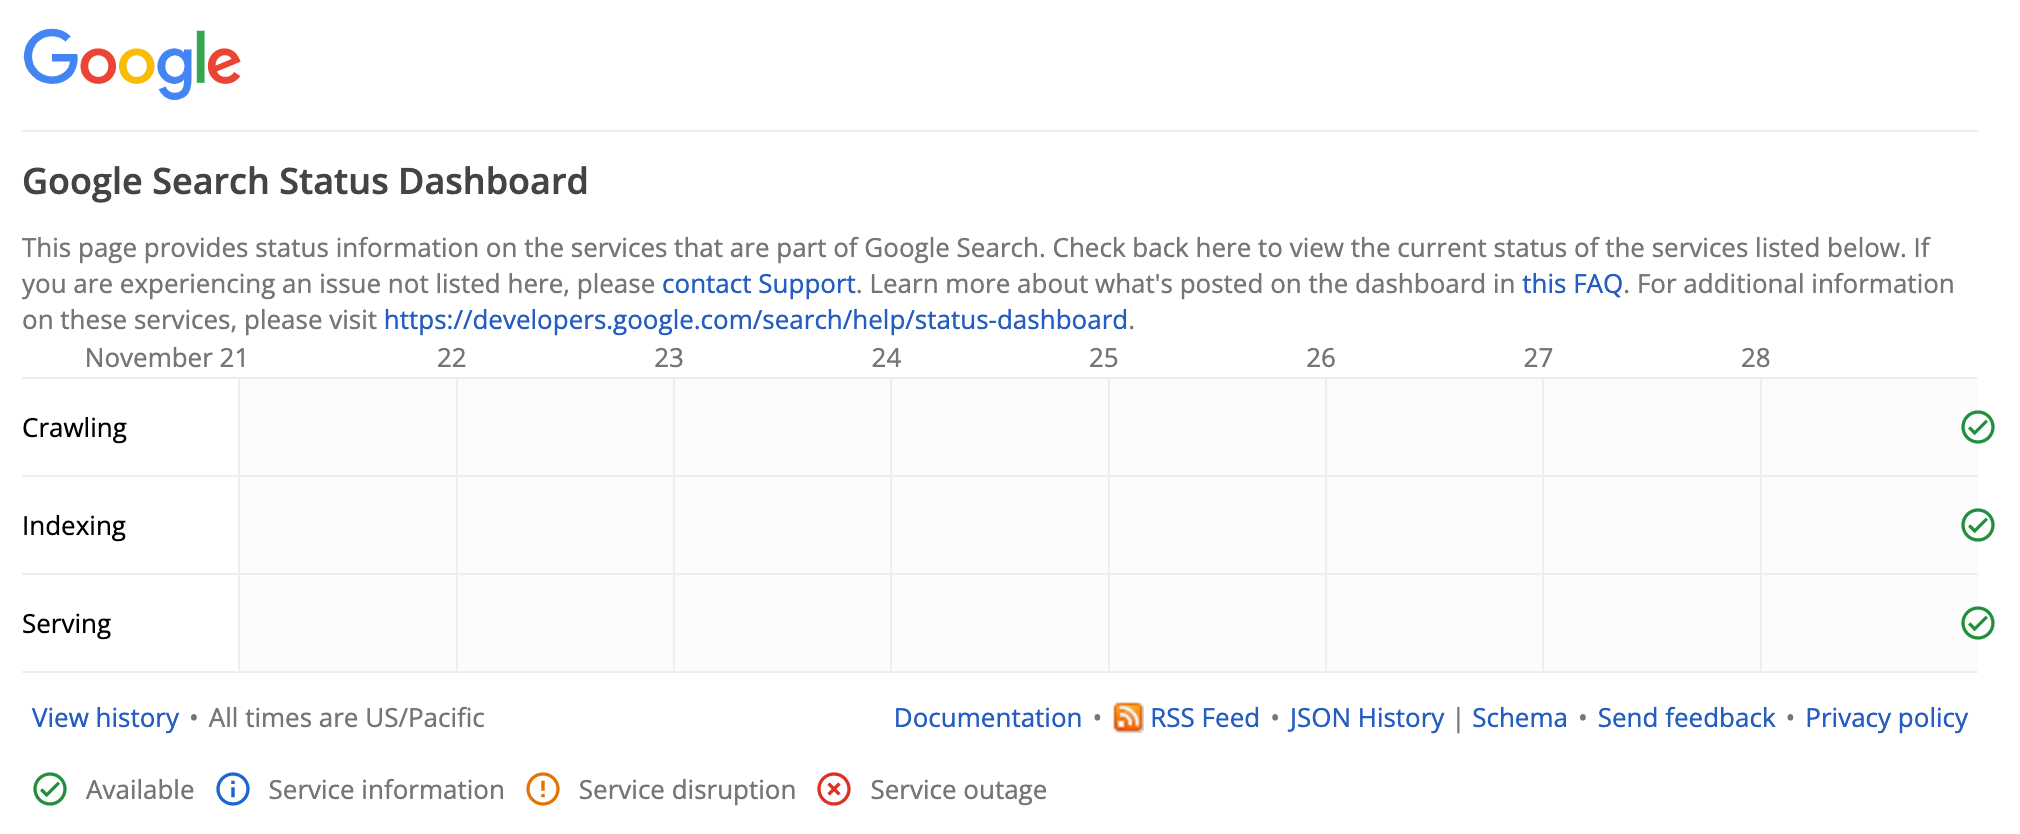 La Dashboard dello stato della Ricerca Google senza incidenti in corso